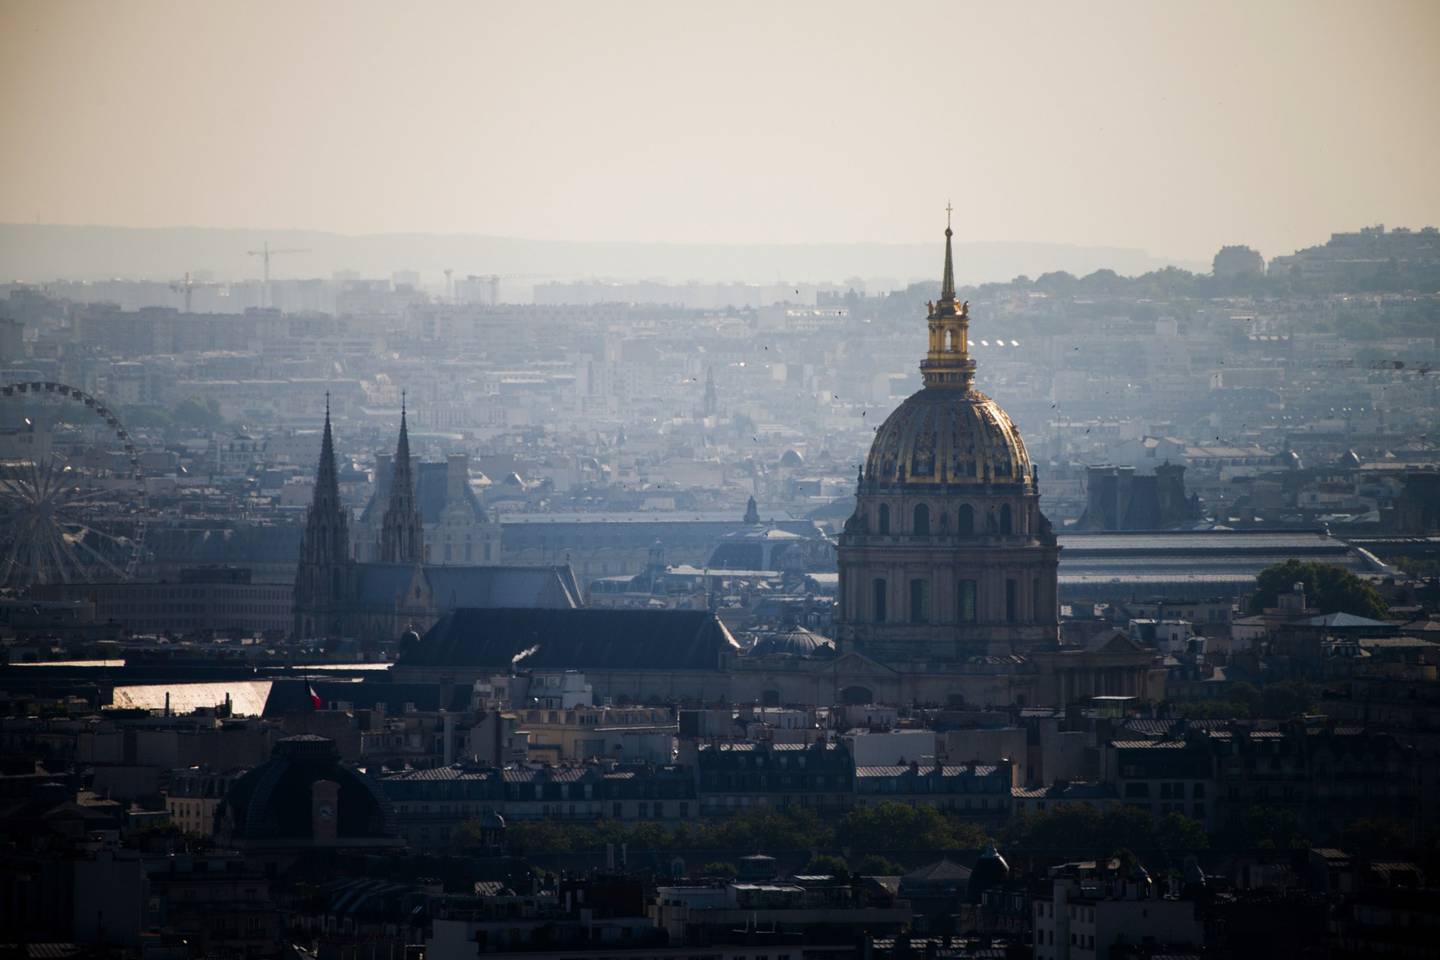 La cúpula de los Inválidos vista desde el un globo de aire caliente, mientras realiza controles de calidad del aire en París.